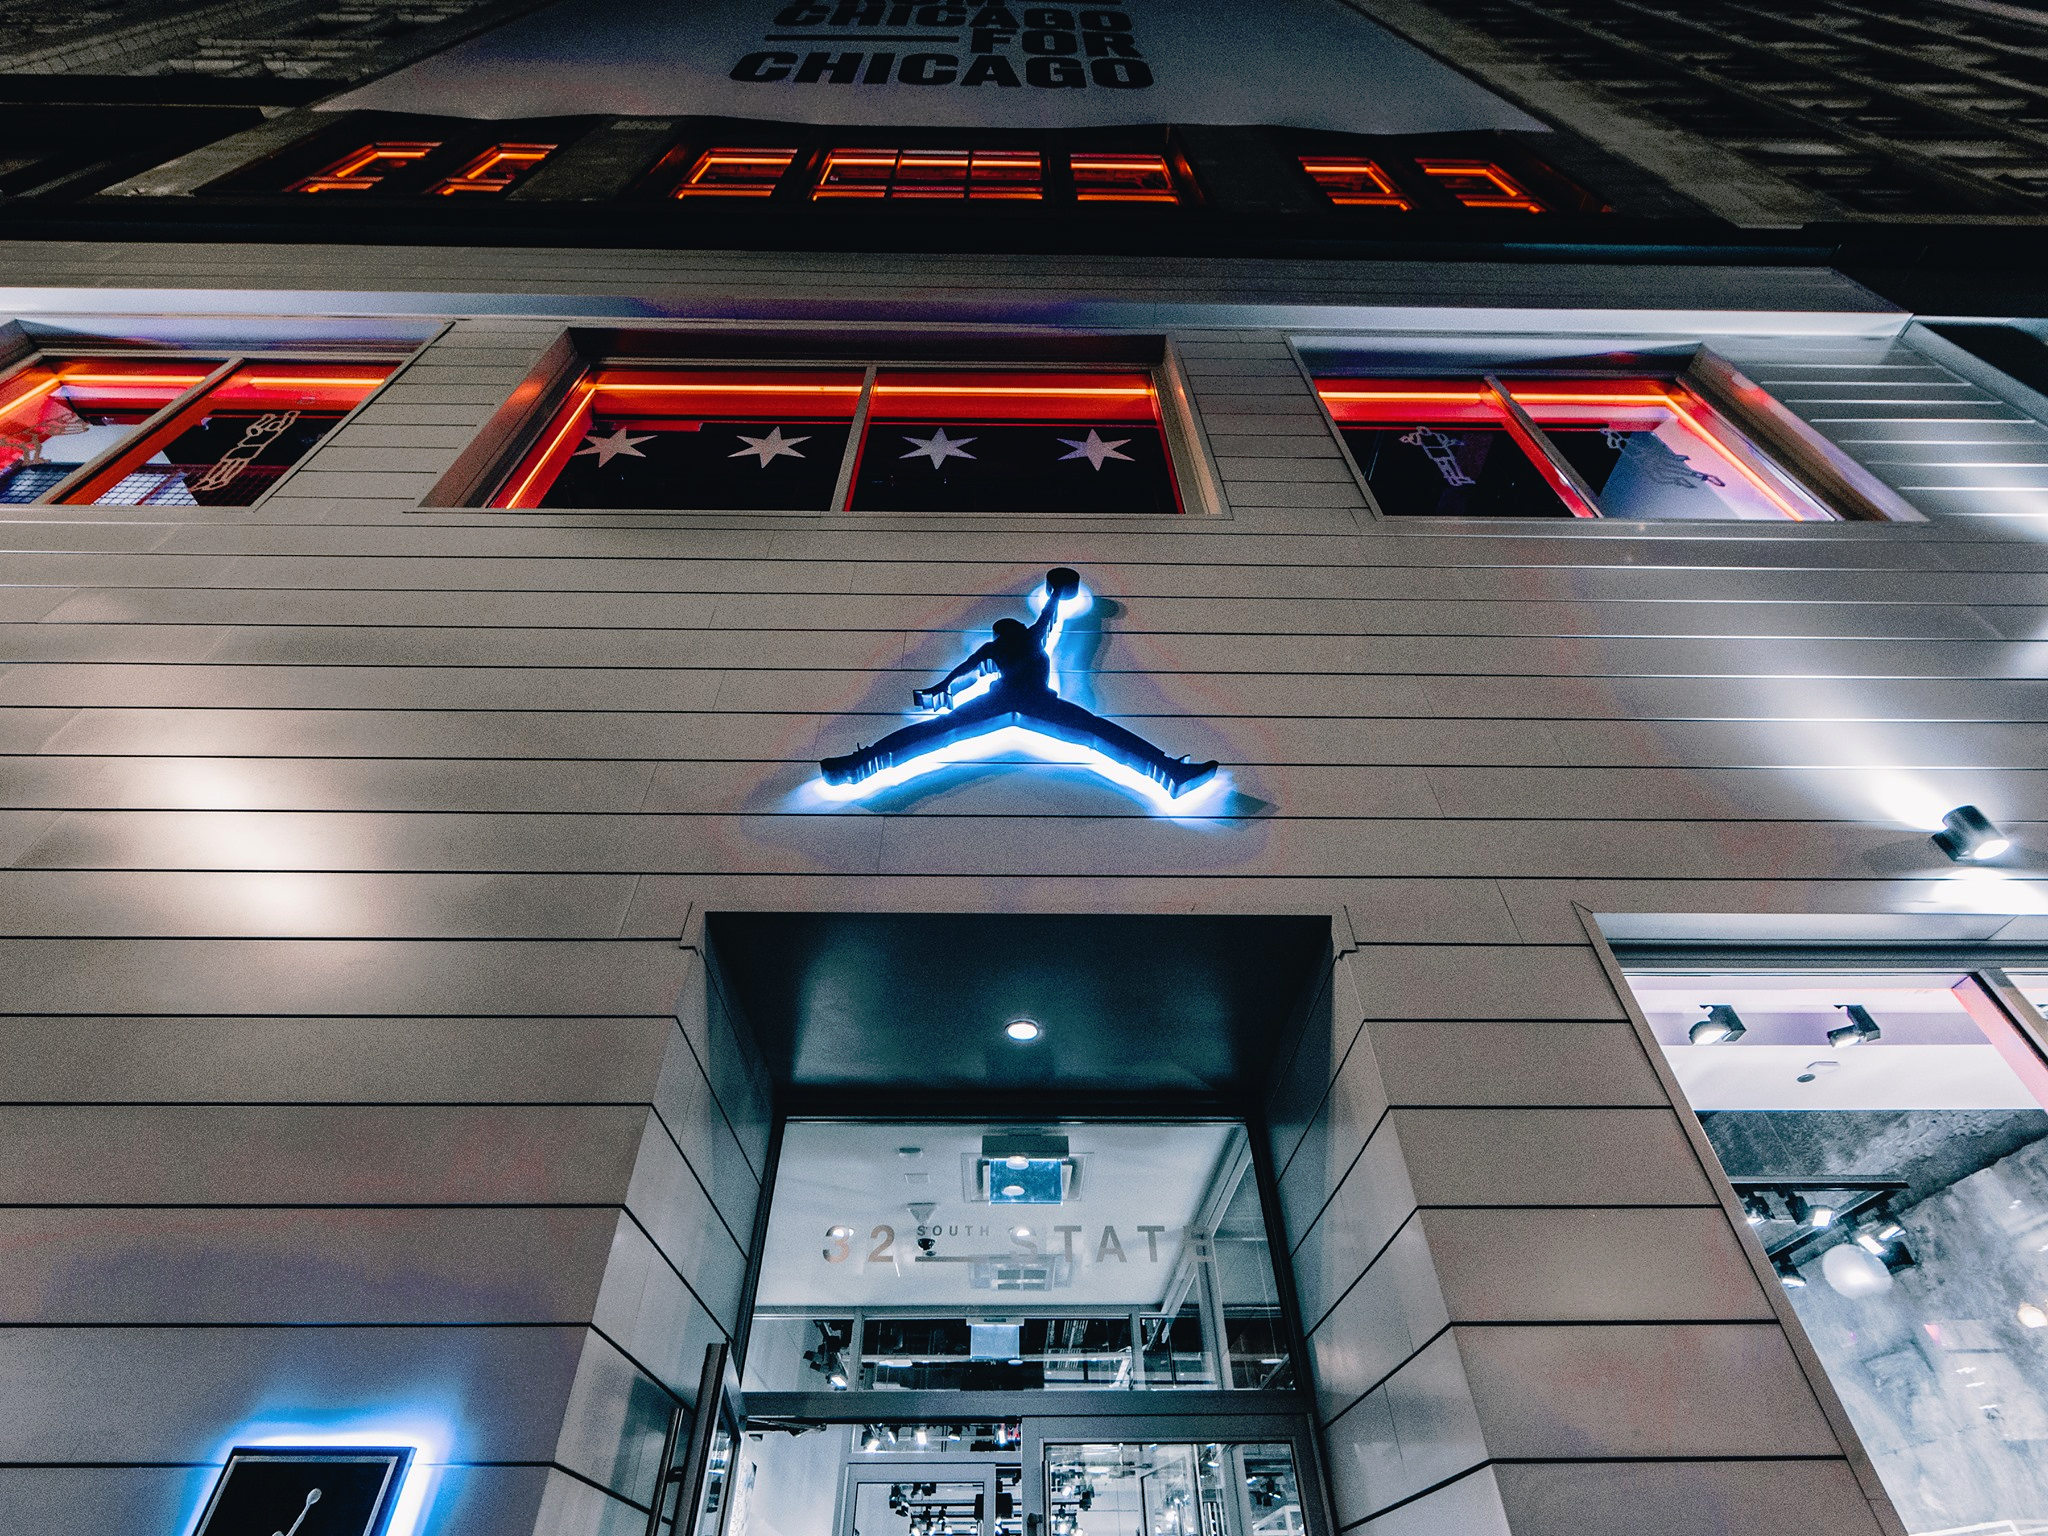 Jordan abre su primer tienda exclusiva | SneakerHead Argentina